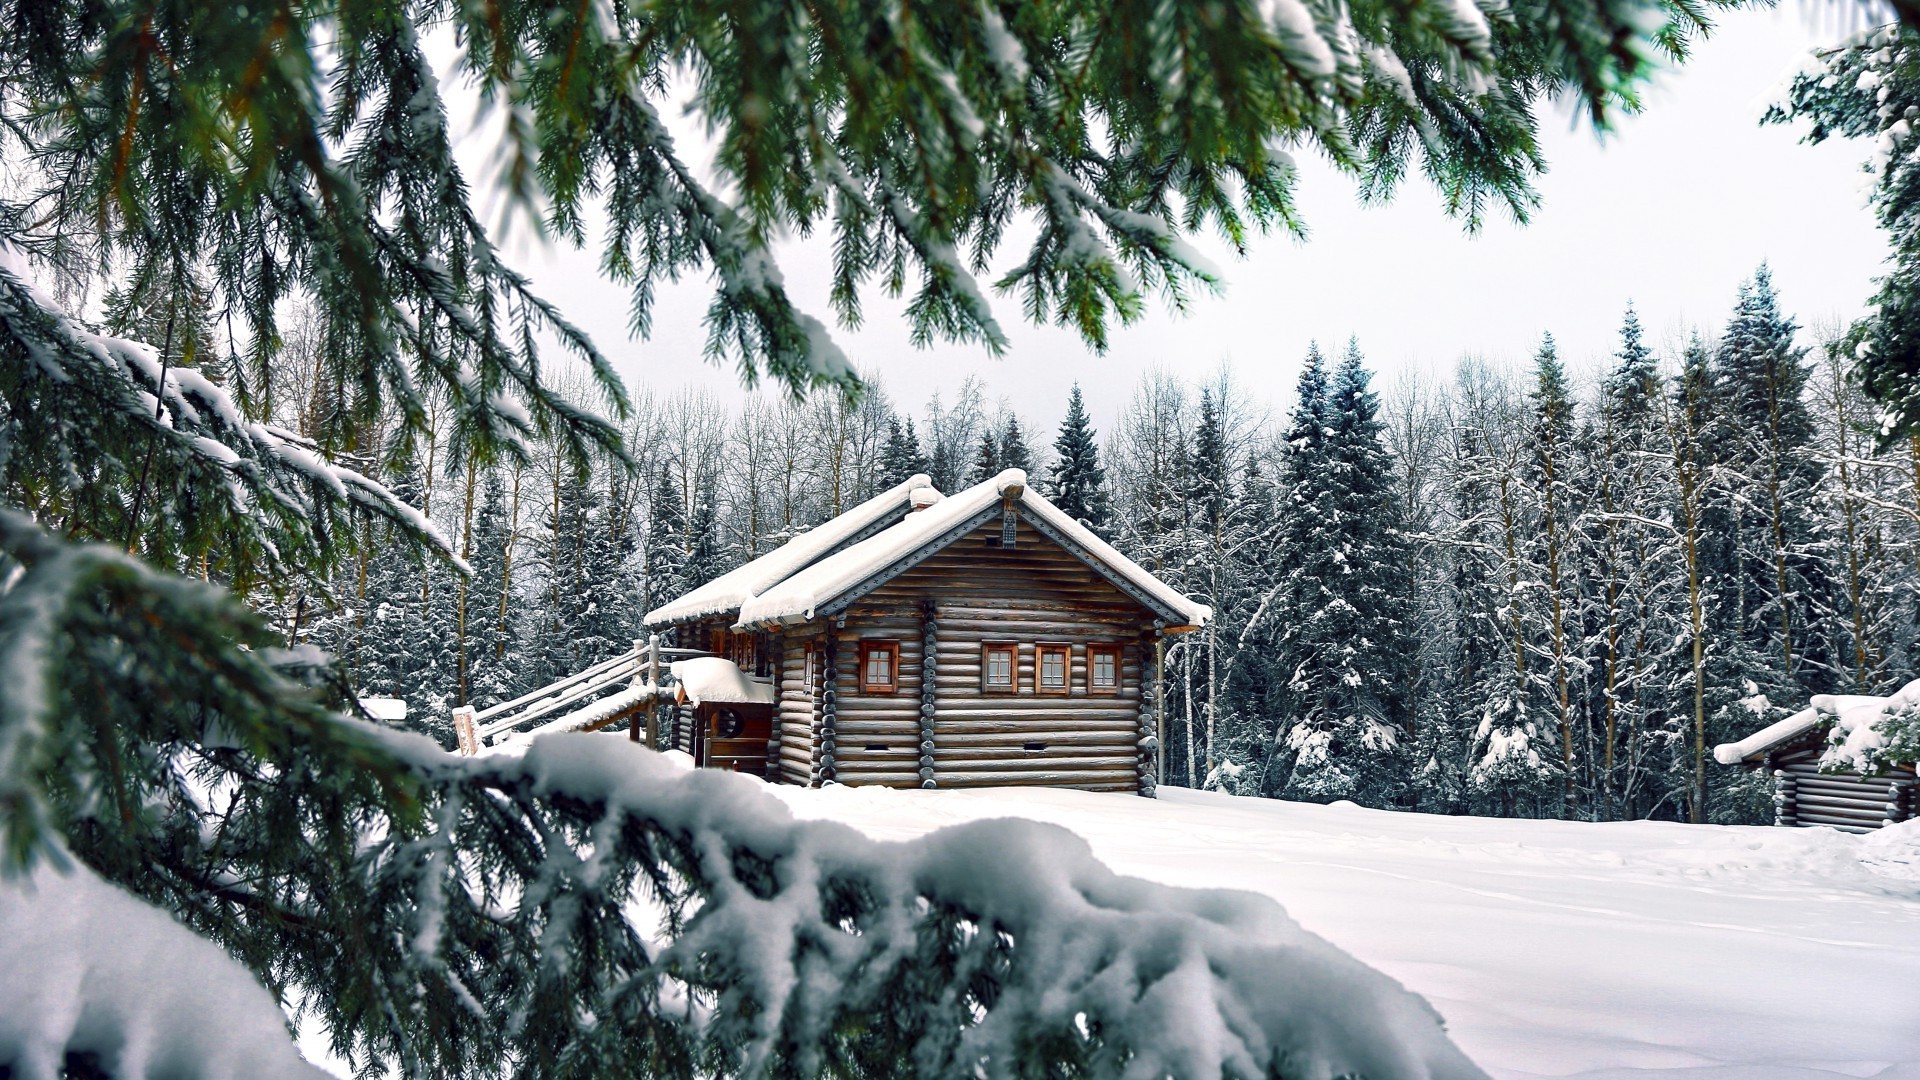 зима снег древесины дерево холодная курорт эвергрин замороженные мороз пихта сезон лед живописный сосна избушка шале пейзаж дом горы